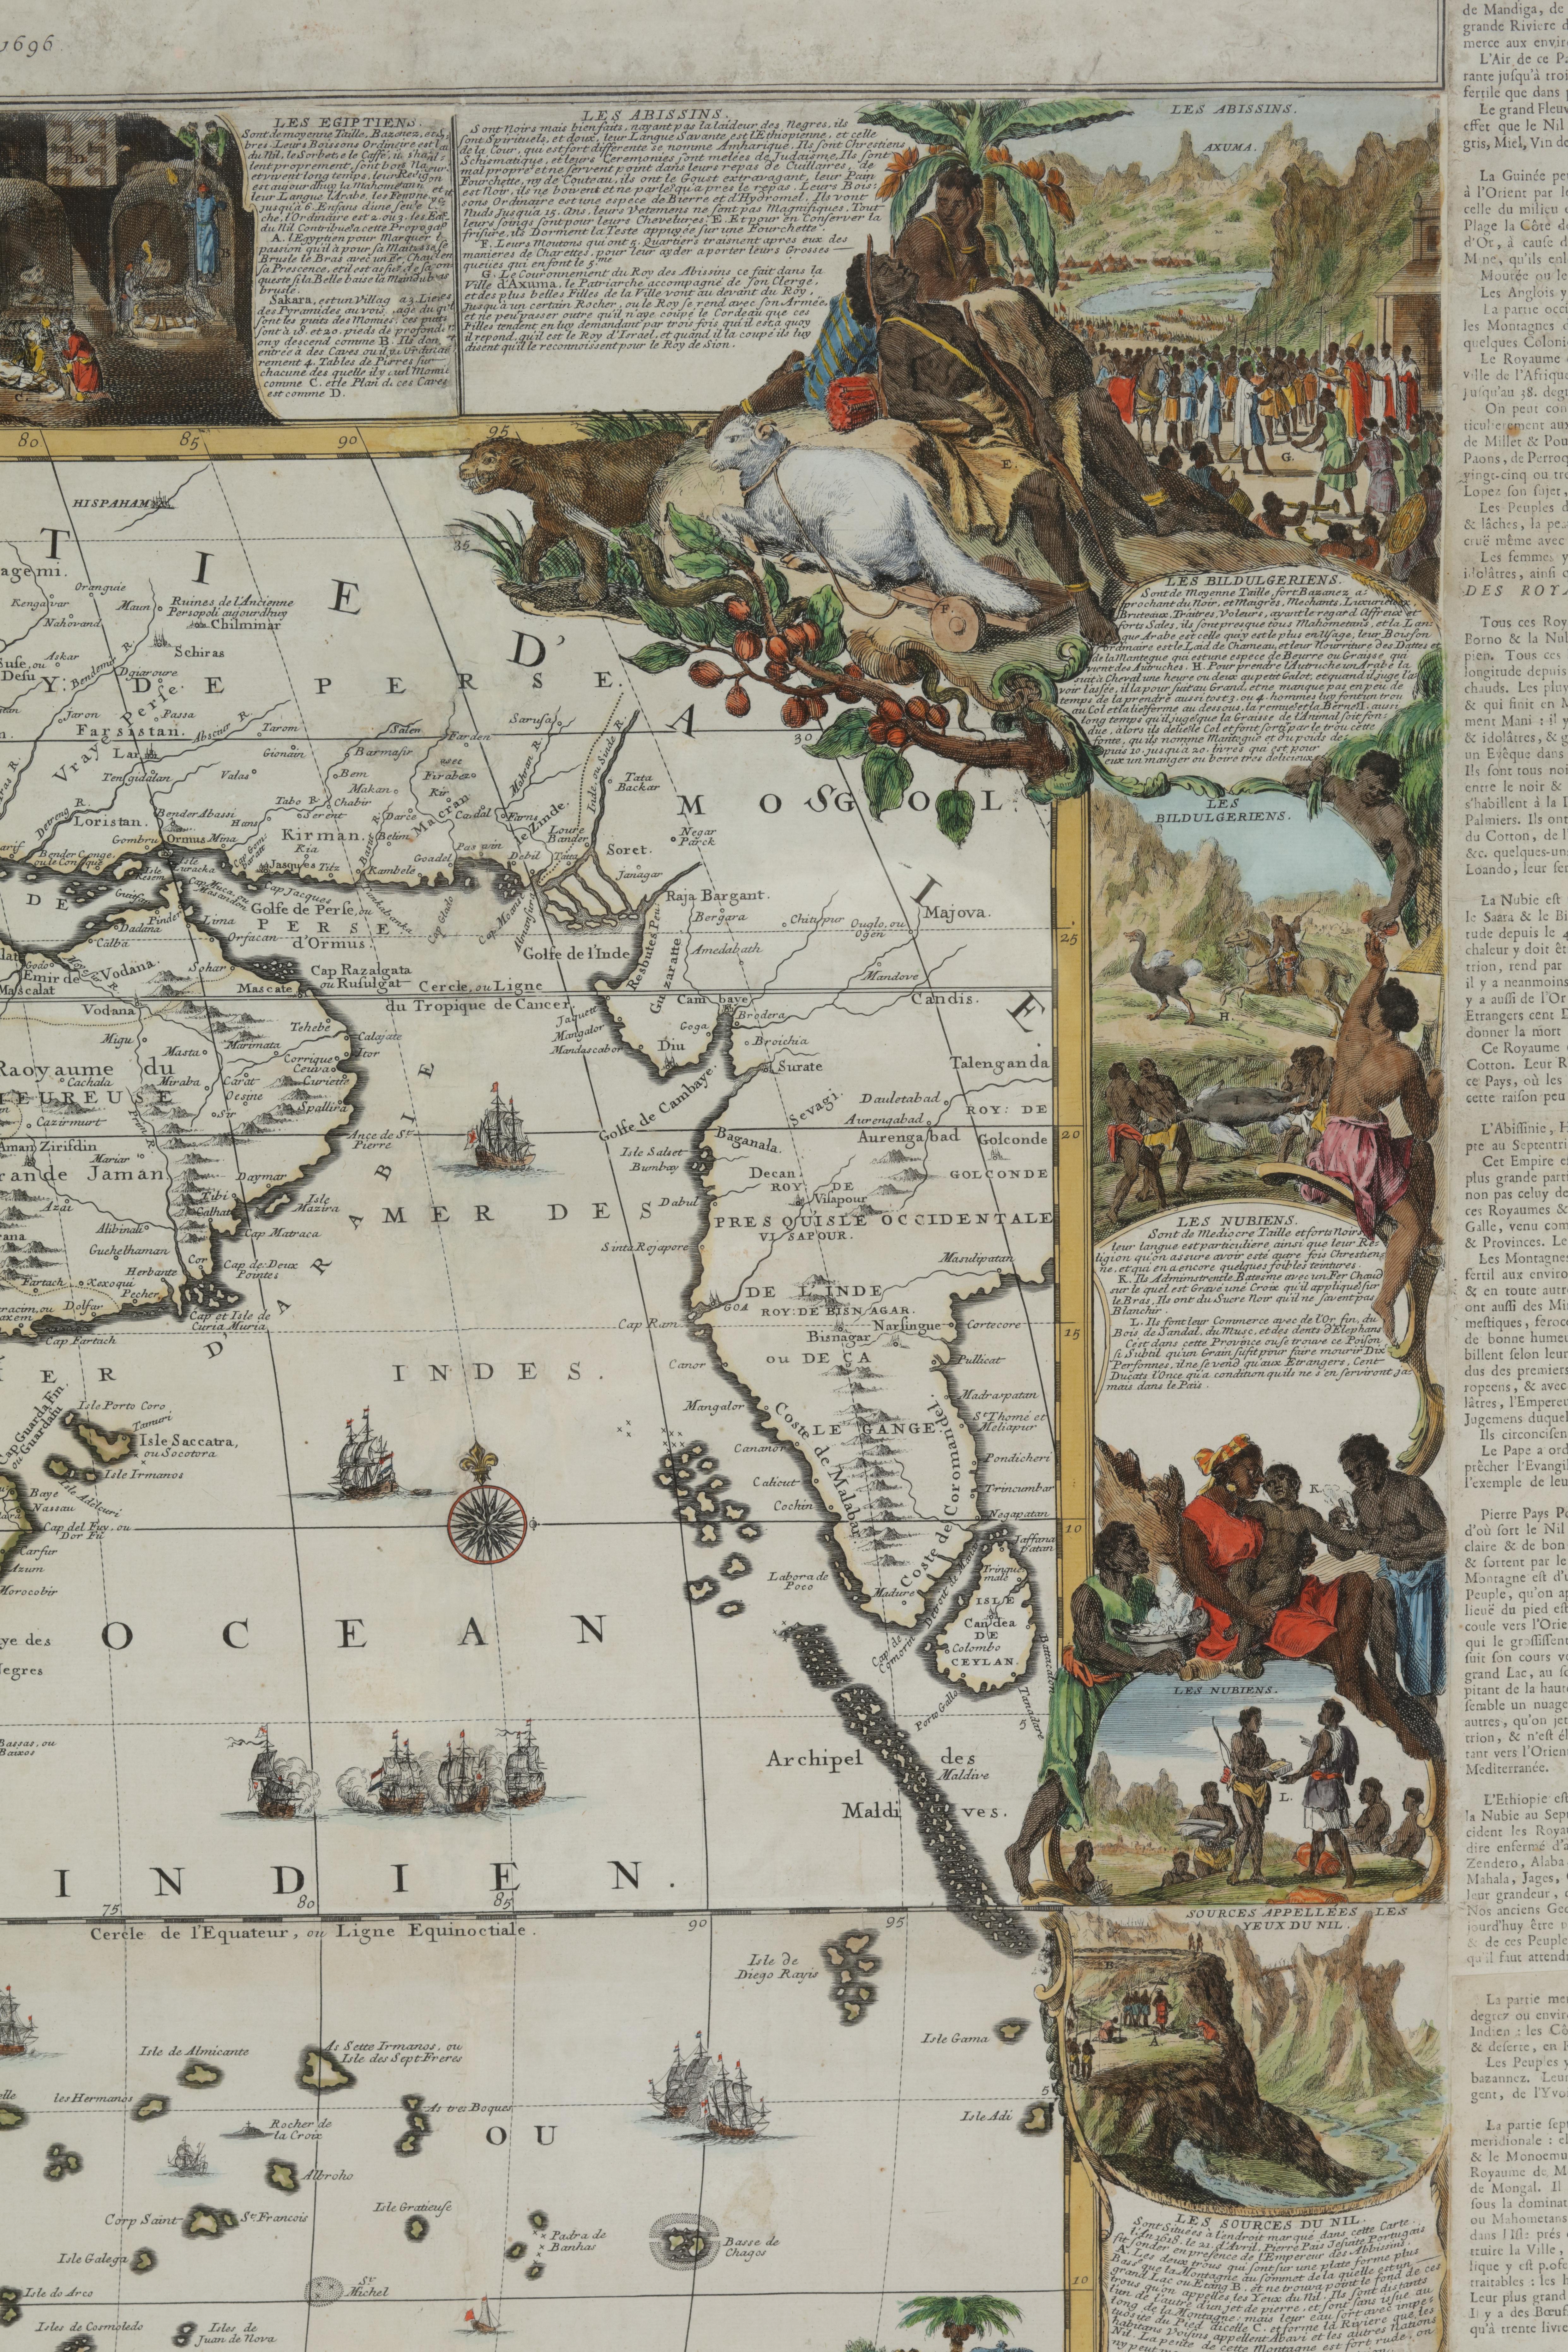 Nicolas de Fer (PARIS 1647-1720)

L’Afrique divisée selon letendu de ses principales parties, et dont les points principaux sont placez sur les observations des Messieurs de l’Academie Royale des Sciences. Dressée par N. De Fer, Geographe de